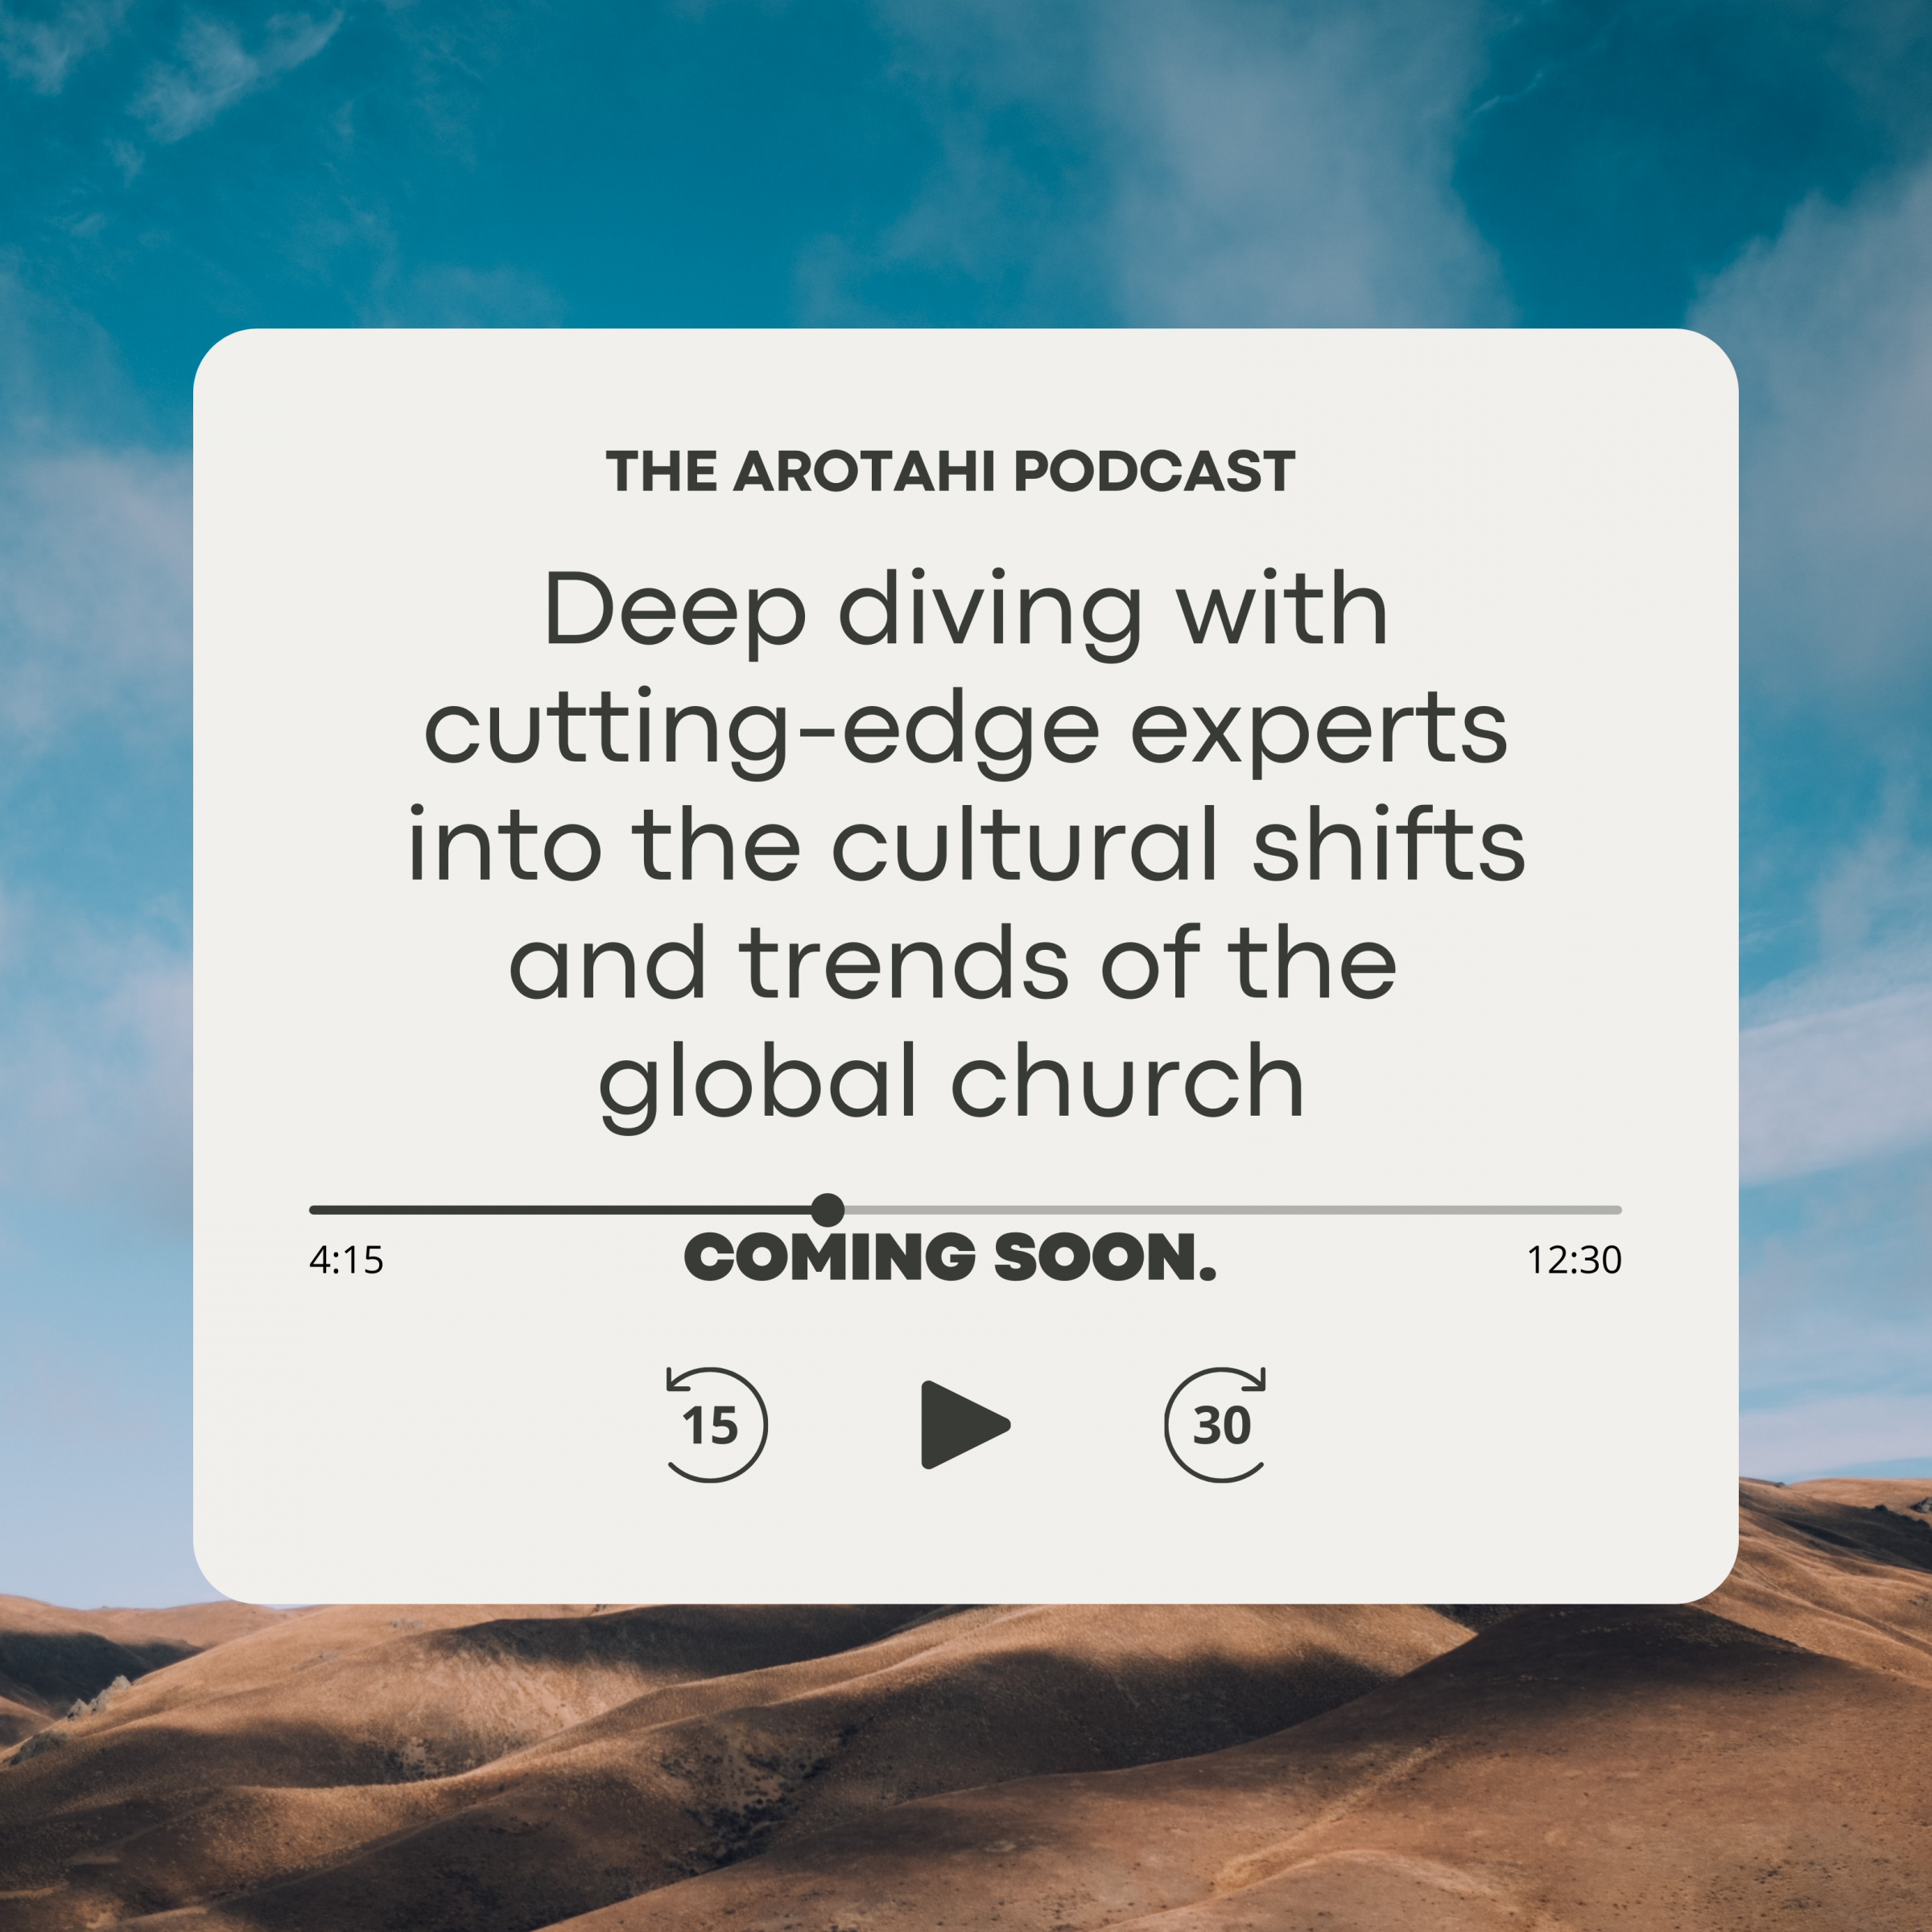 The Arotahi Podcast Image